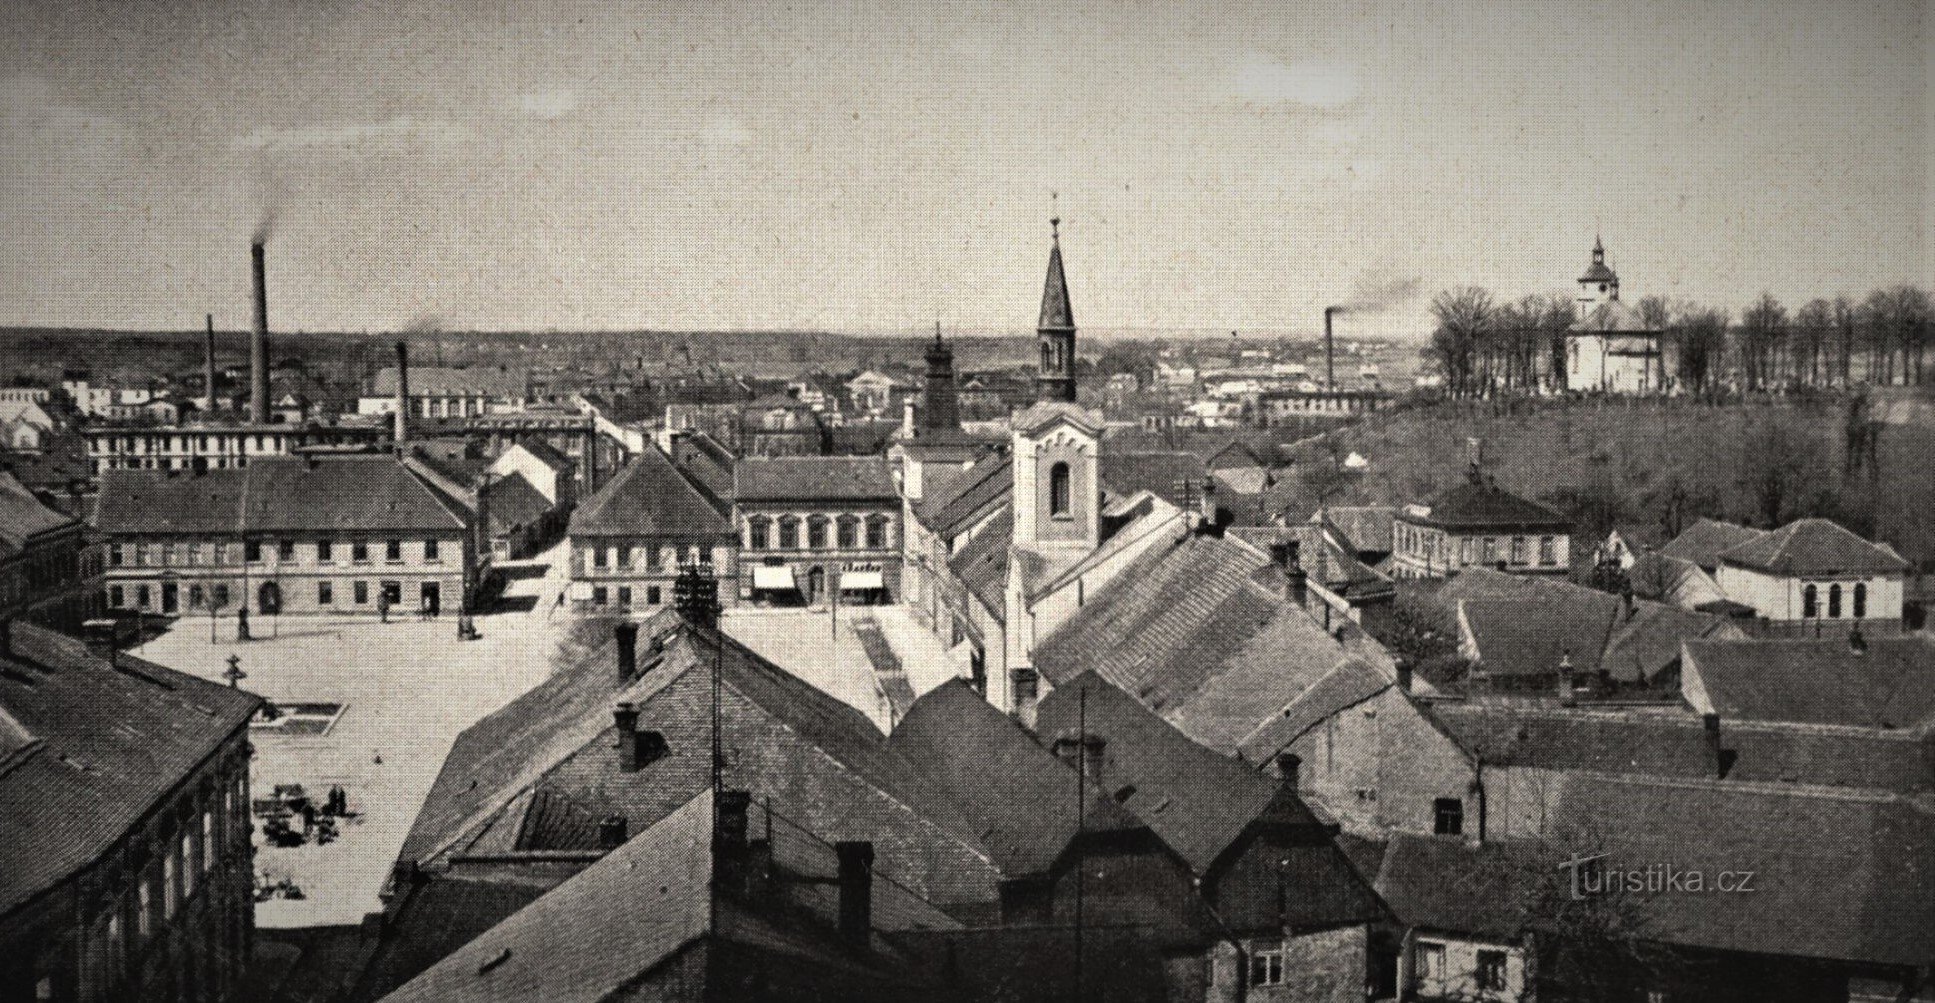 30 年代初期的广场景观（Třebechovice pod Orebem）